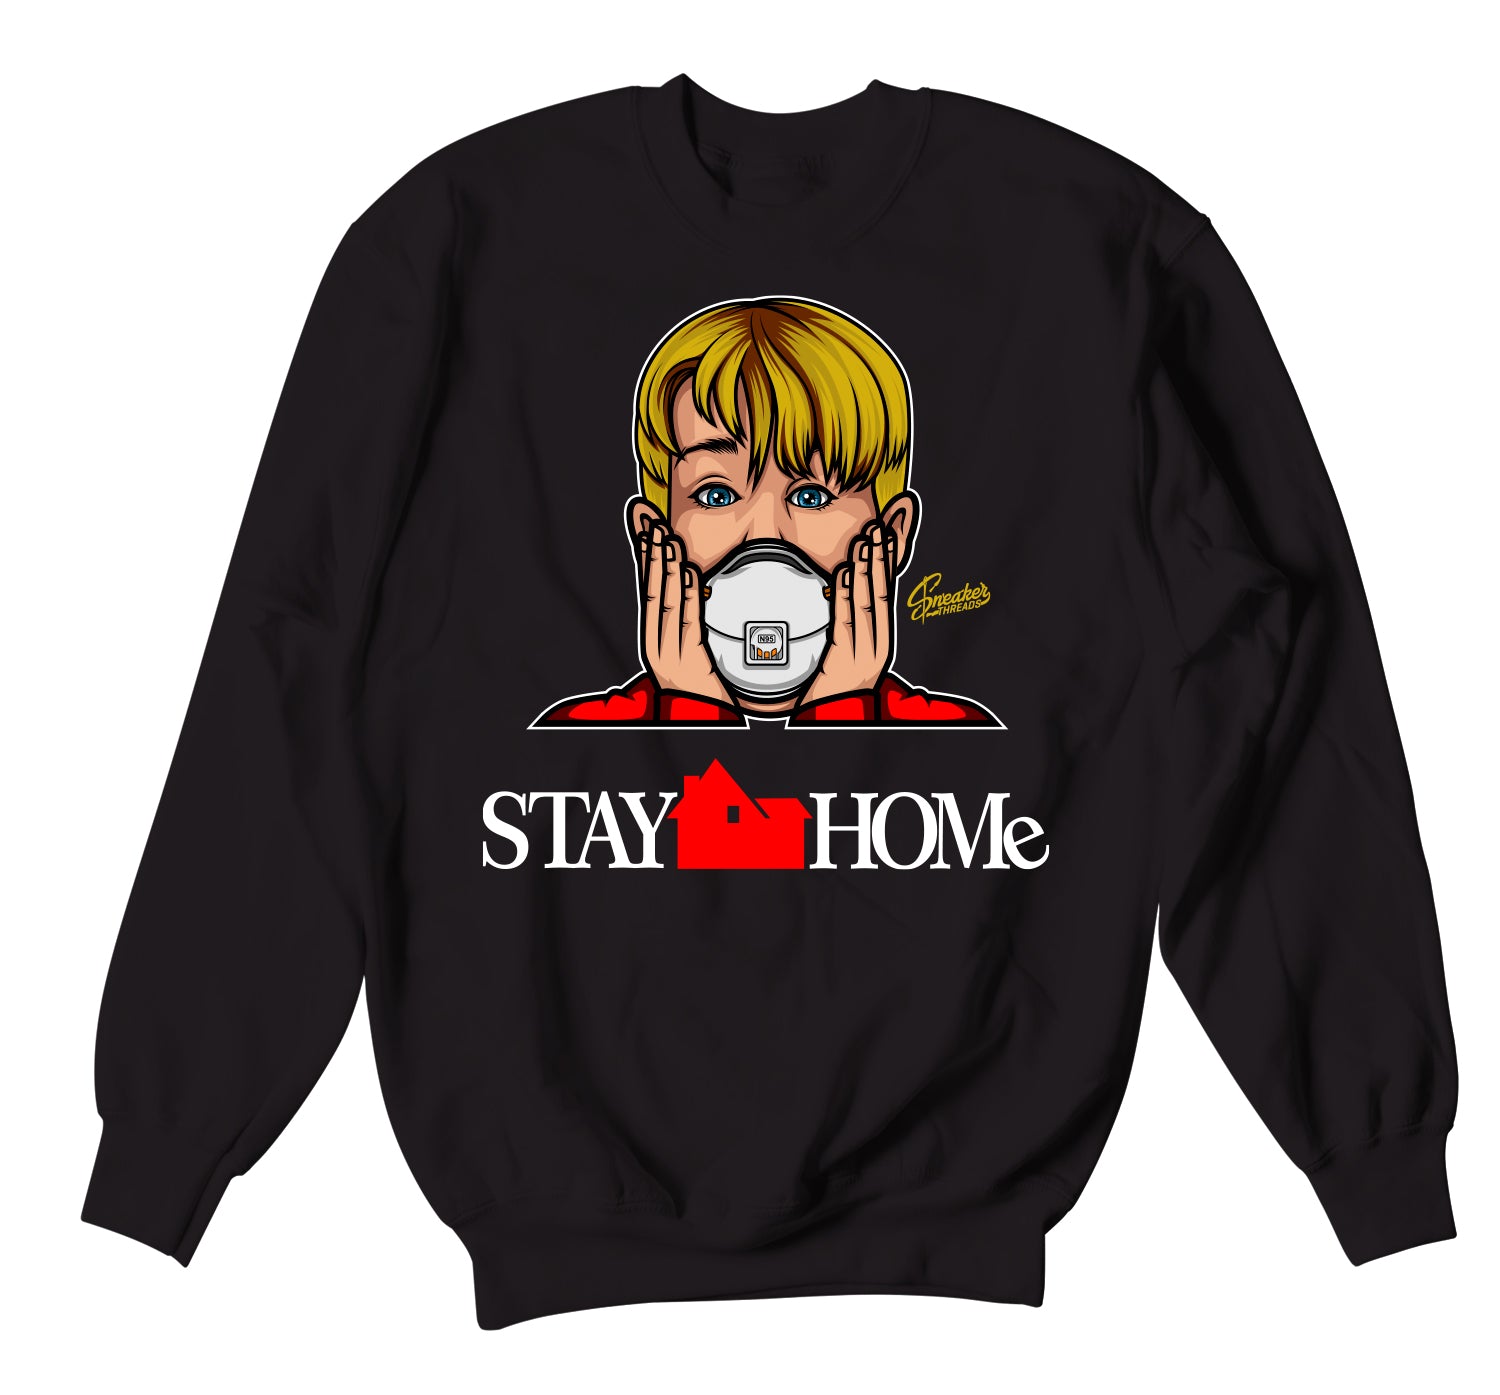 Retro 12 Super Bowl Sweater - Stay Home - Black